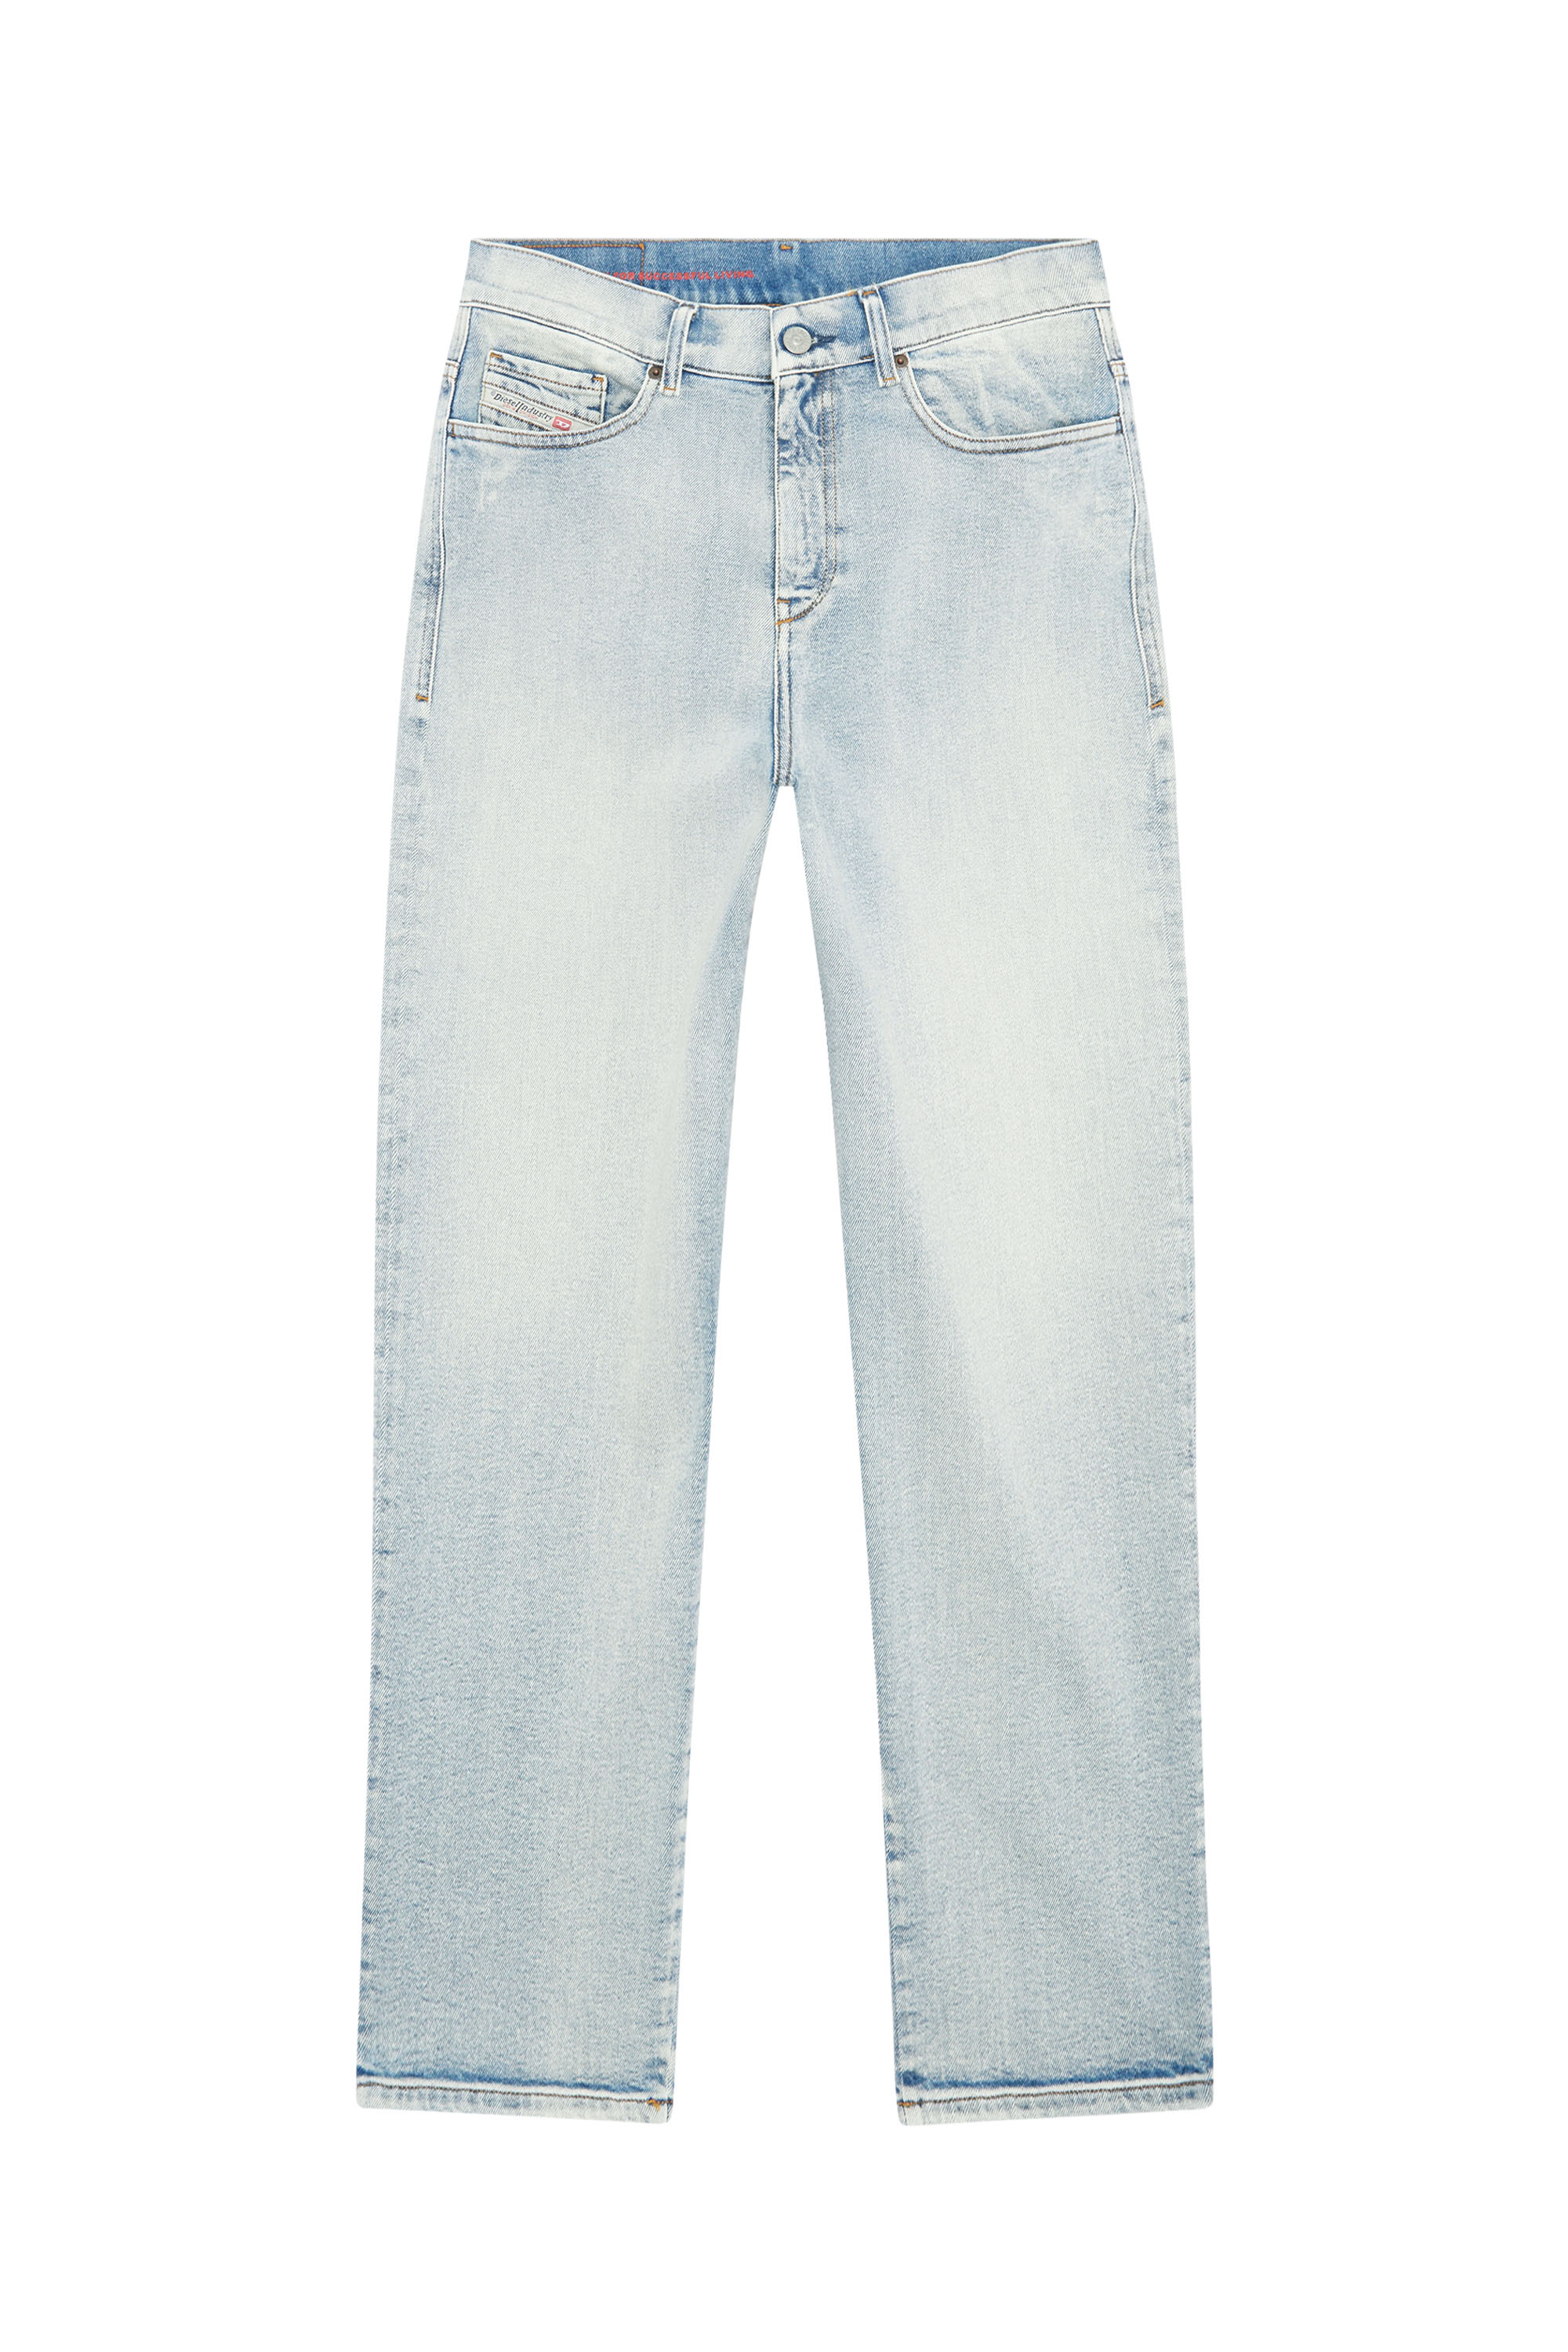 Boyfriend Jeans 2016 D-Air 9C08L, Light Blue - Jeans